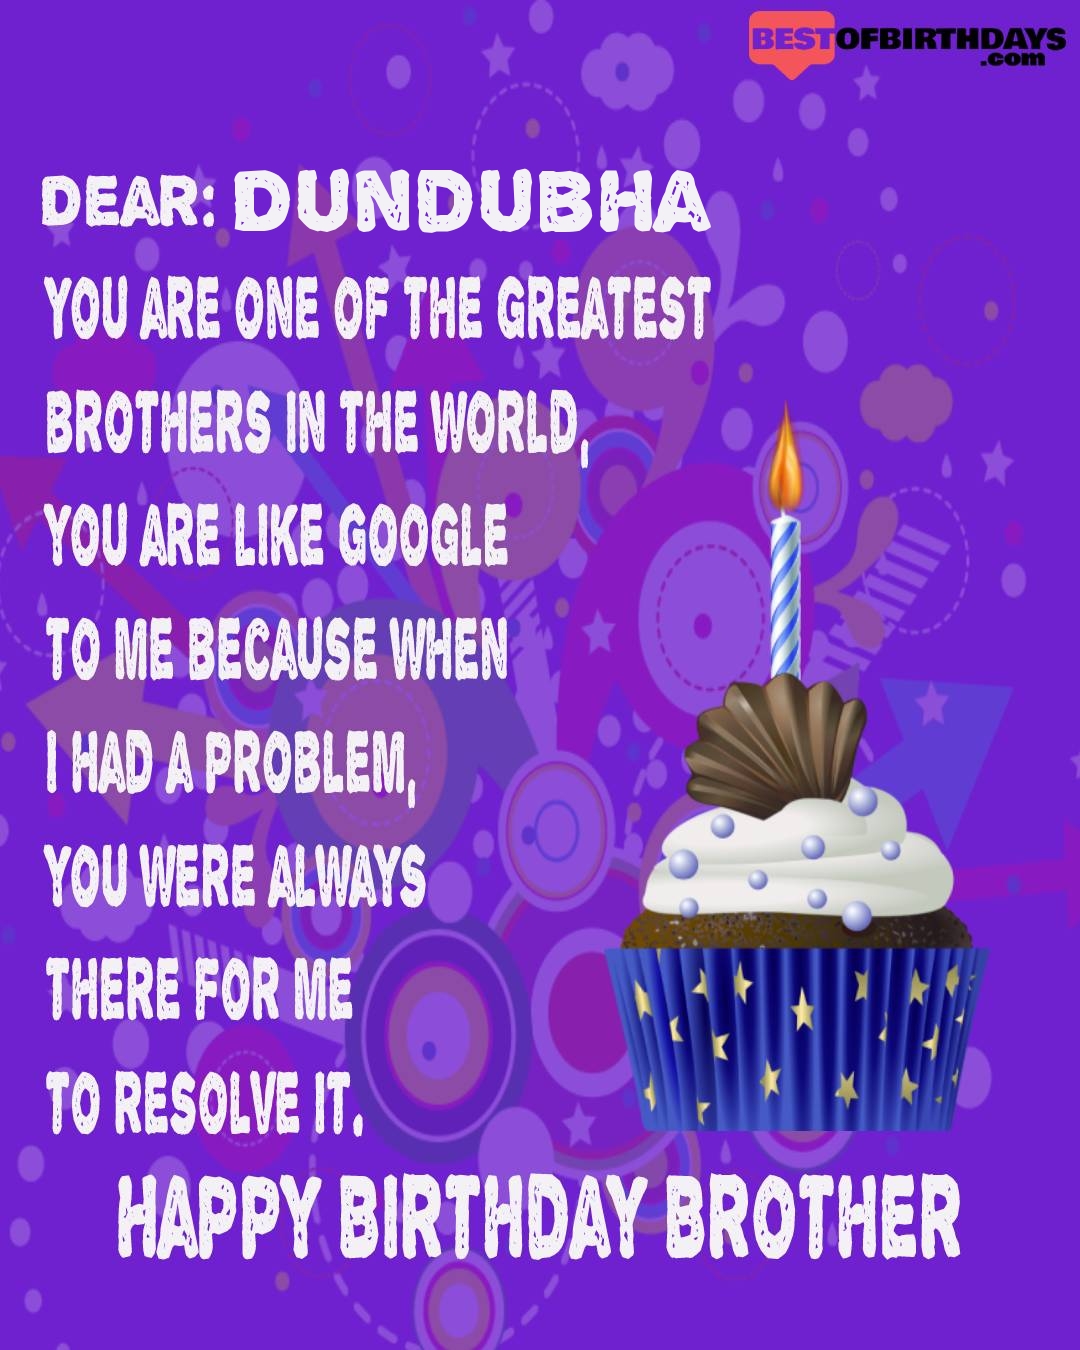 Happy birthday dundubha bhai brother bro